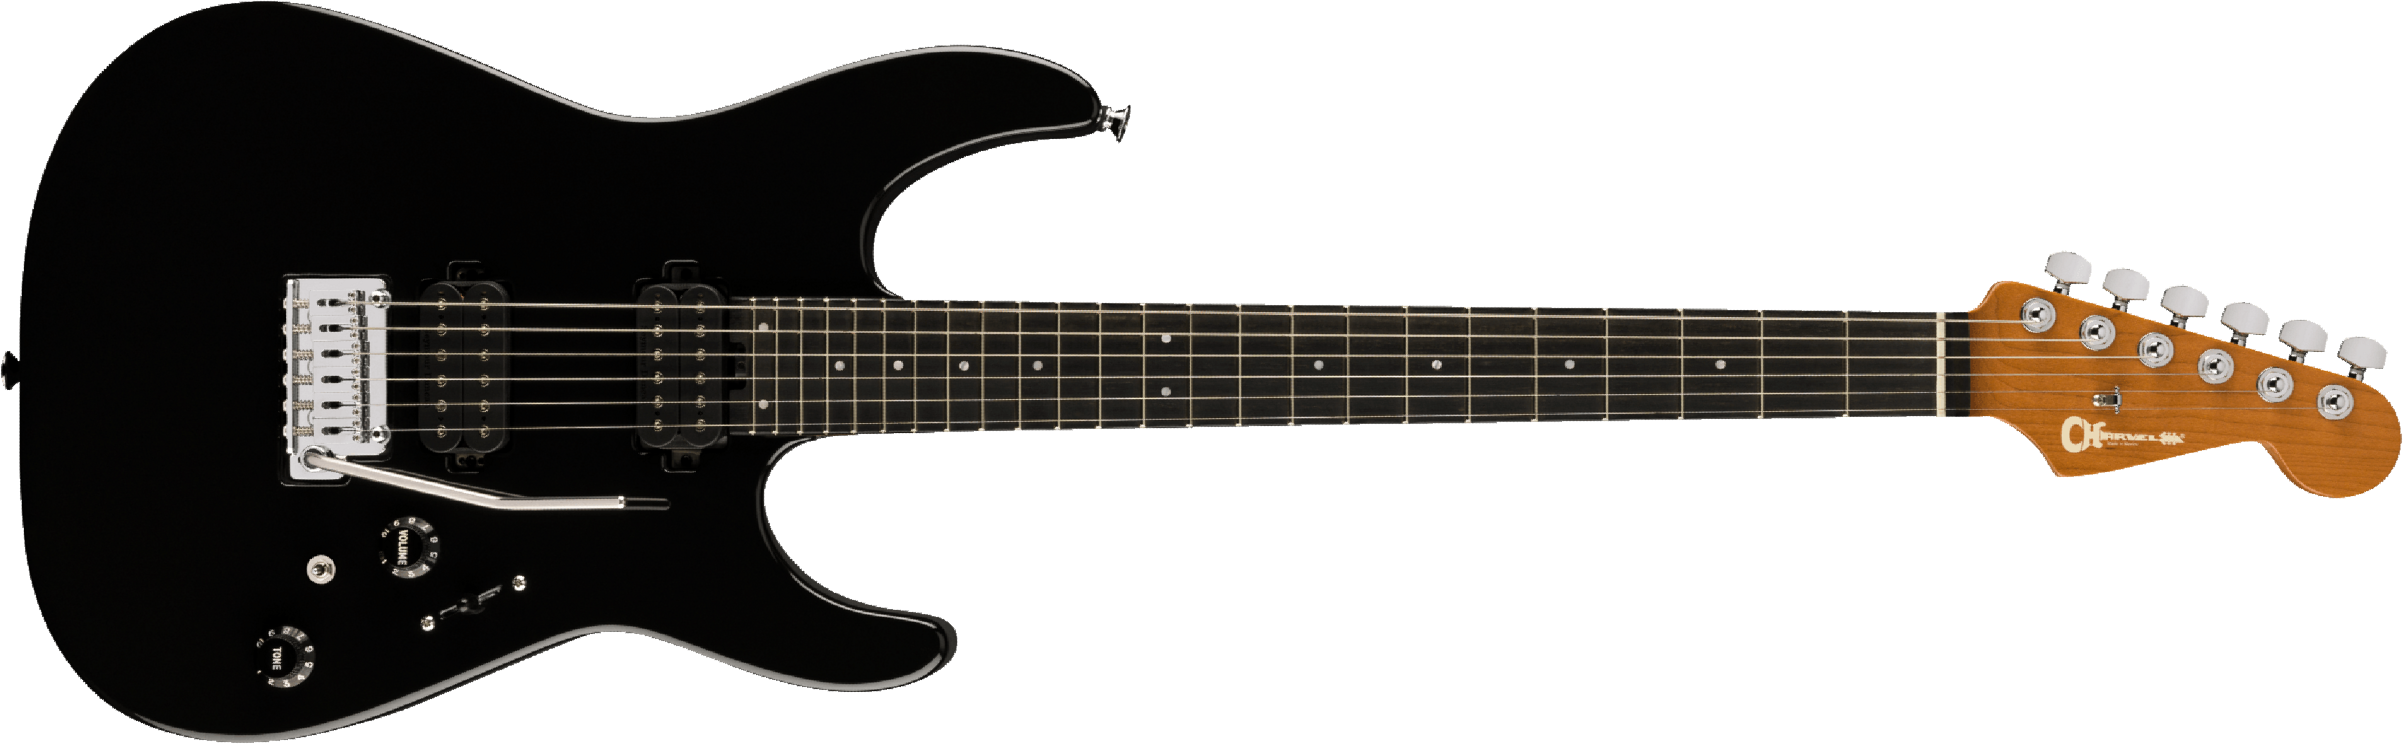 Charvel Dk24 Pro-mod 2pt Hh Eb - Gloss Black - Guitarra eléctrica con forma de str. - Main picture